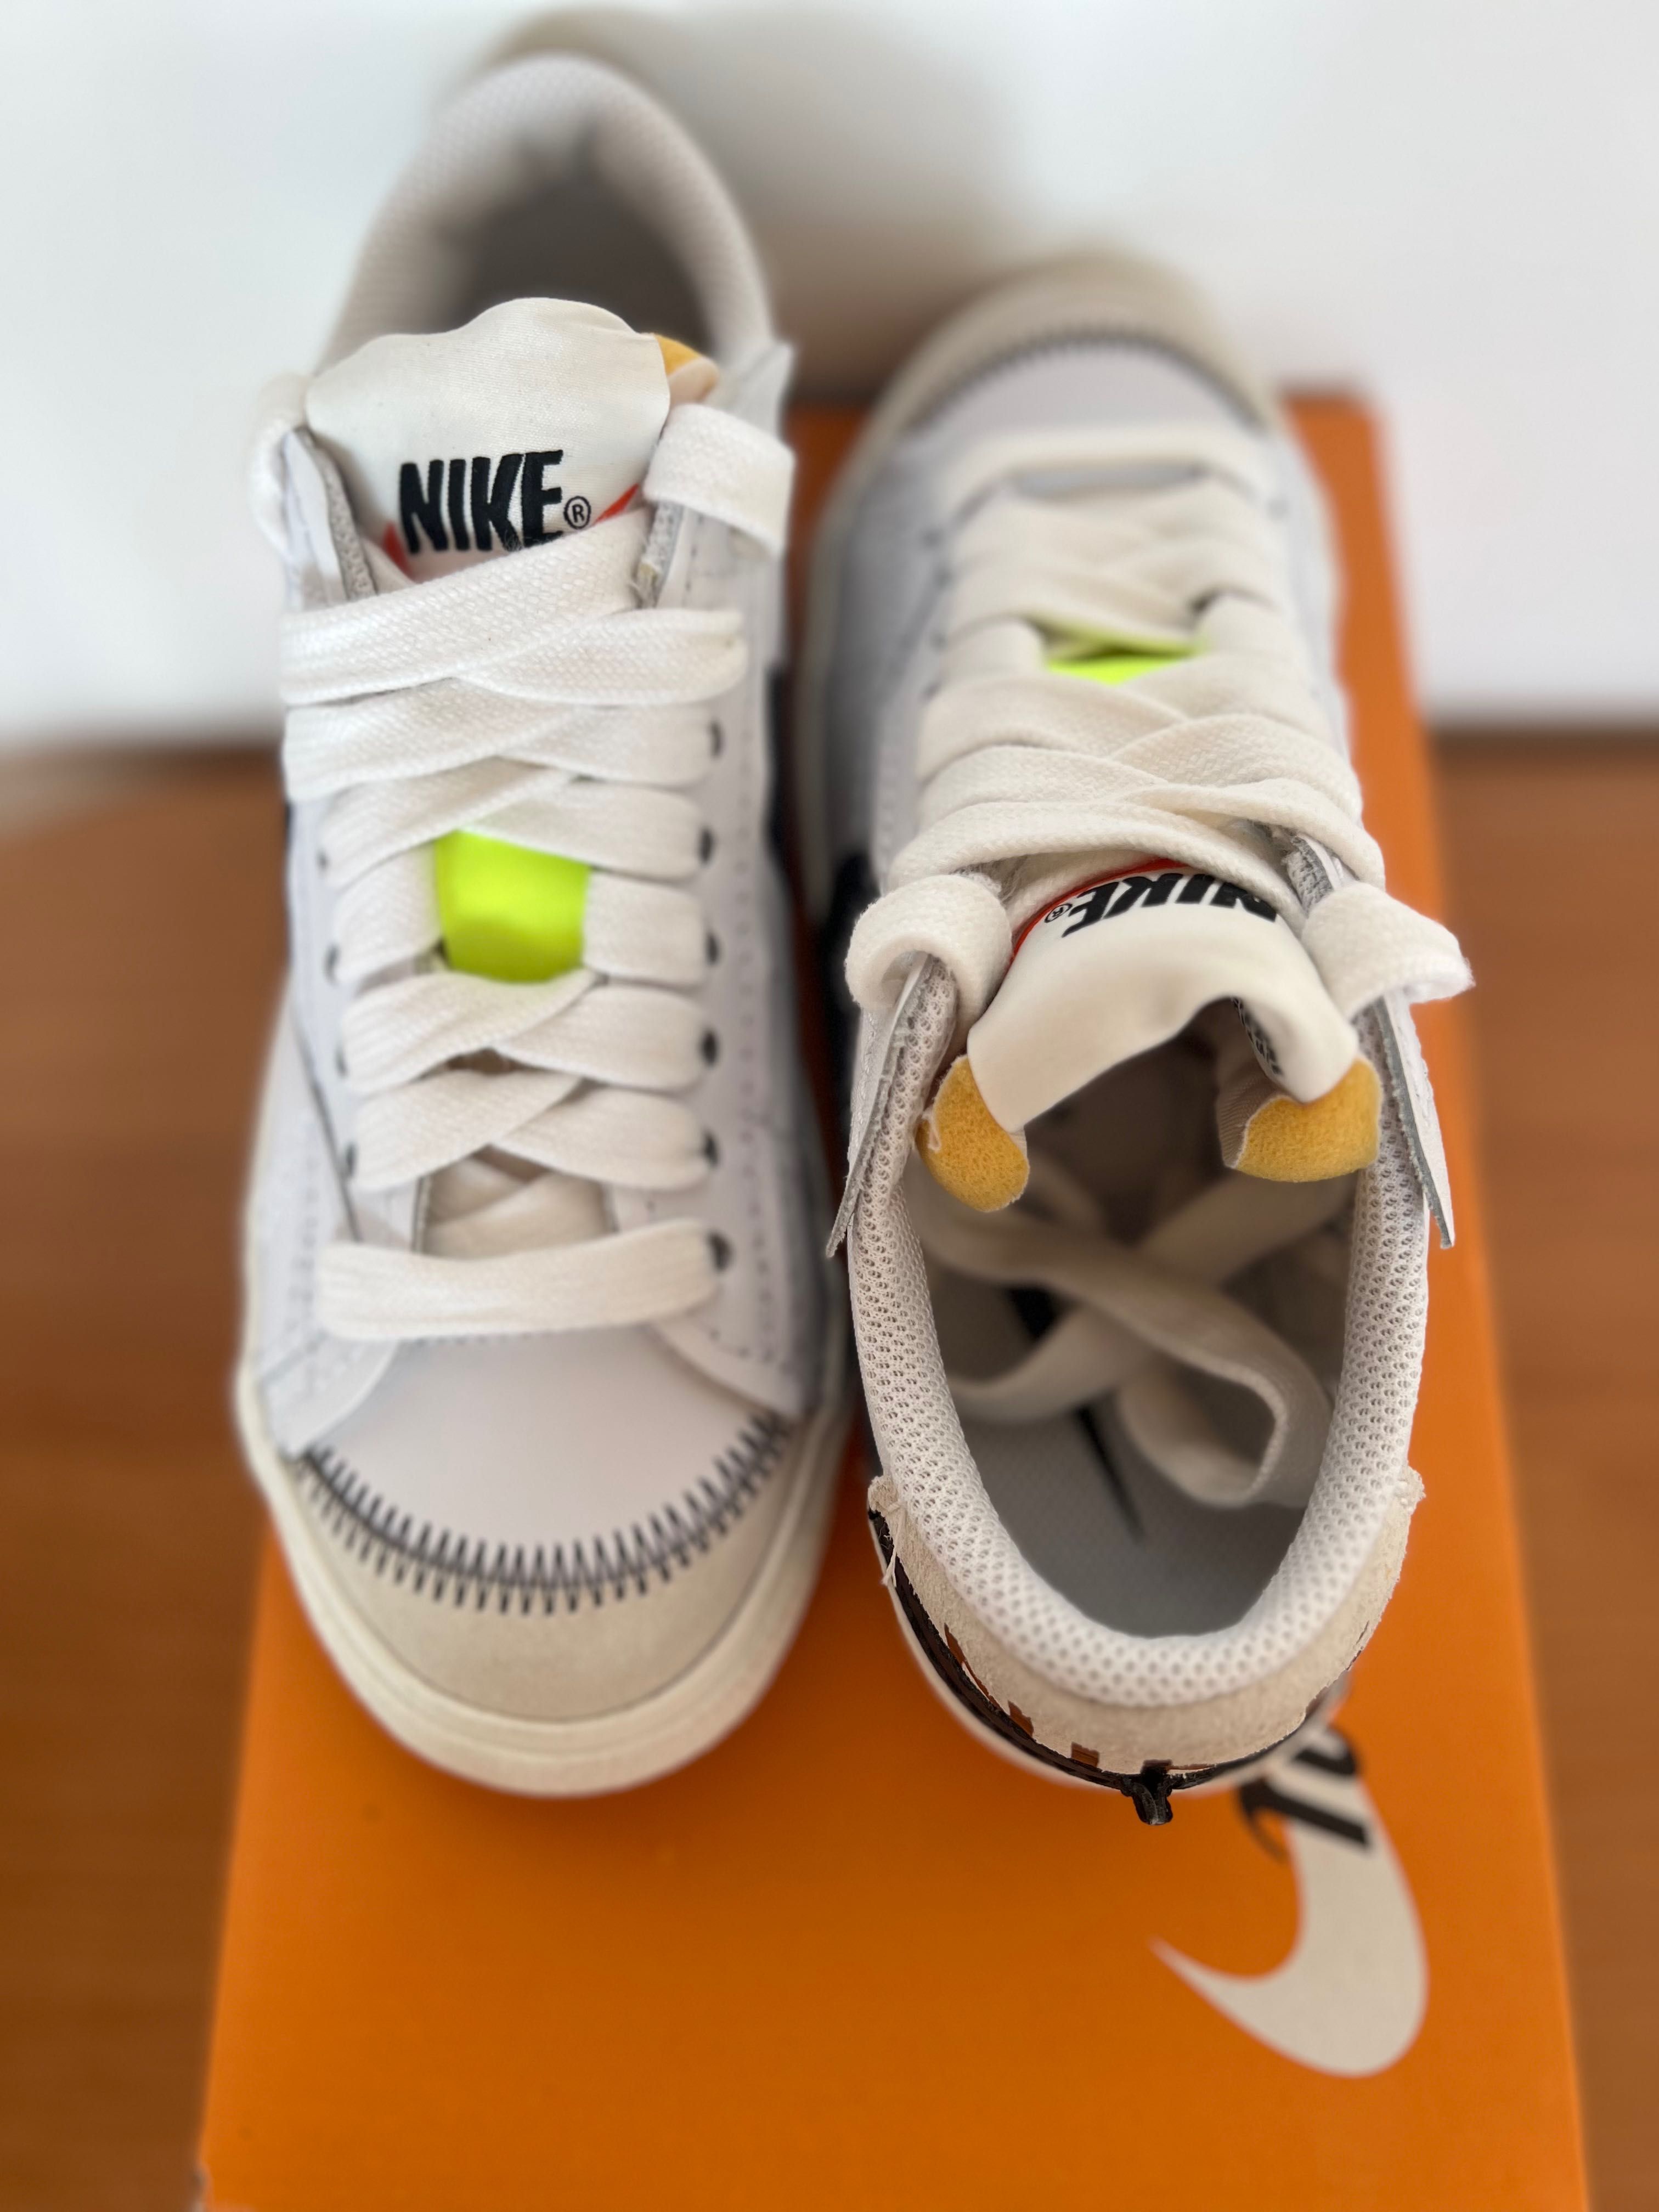 Nike w blazer low ‘77 jumbo